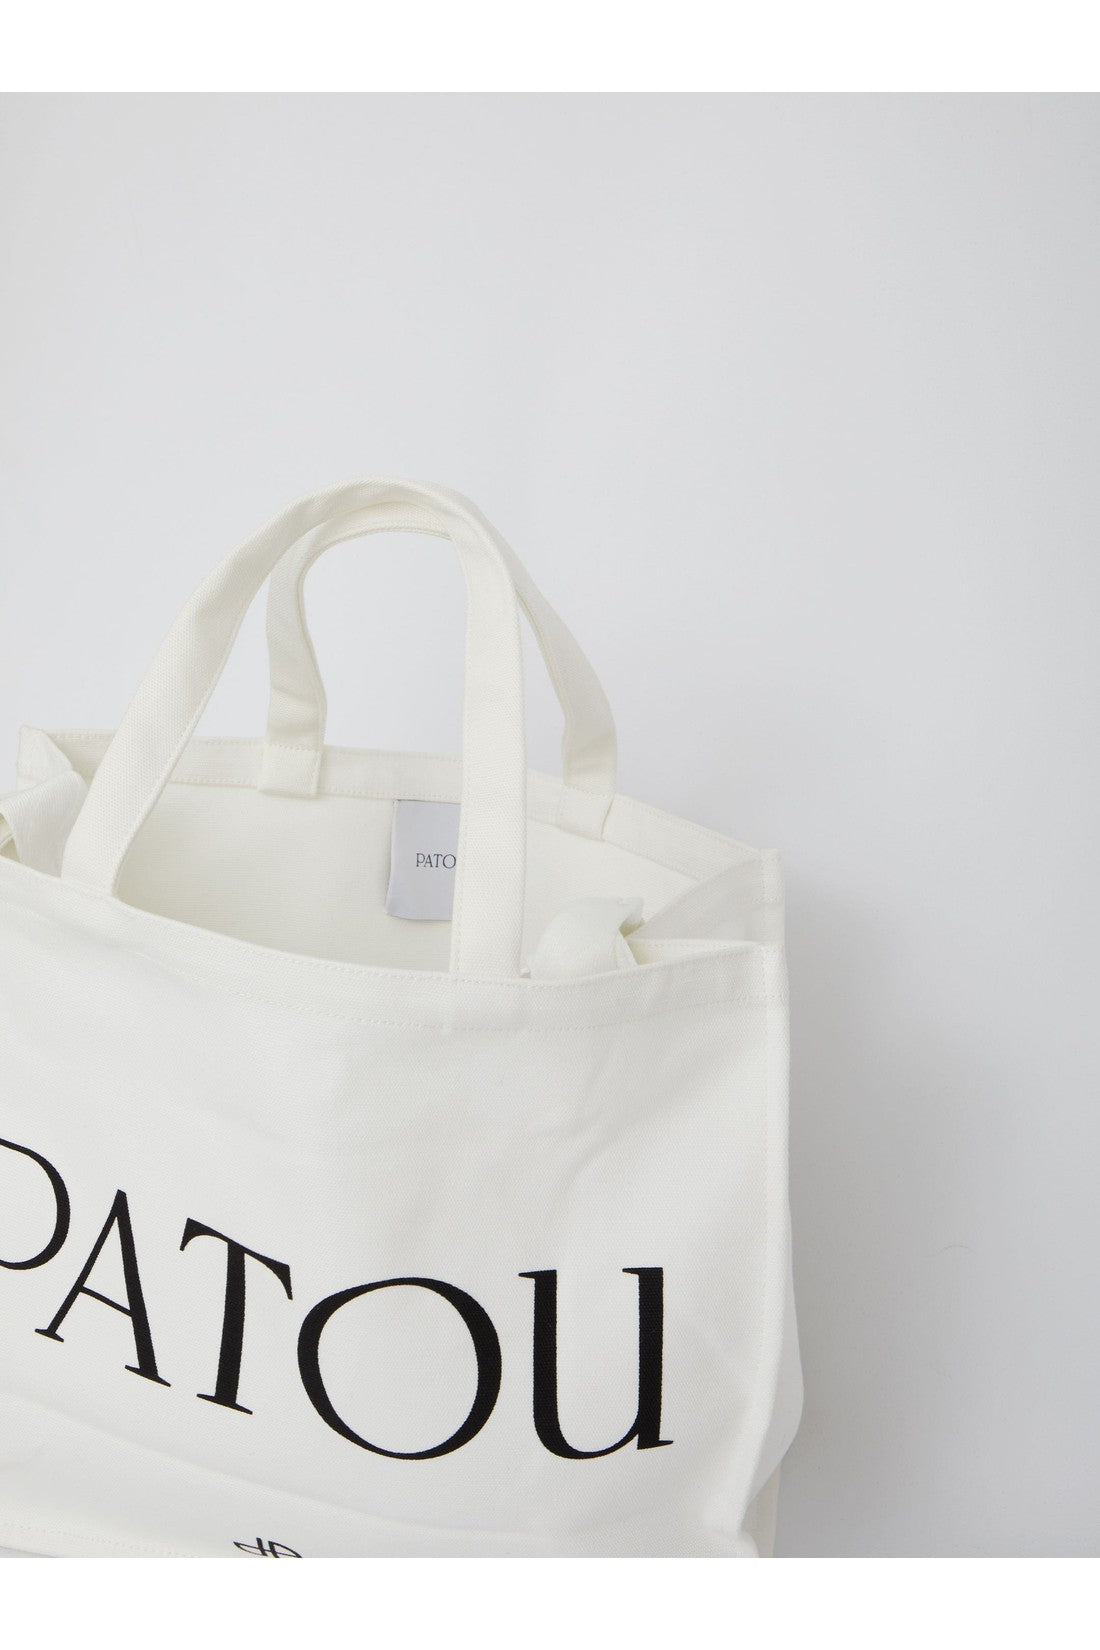 Patou Large Tote bag